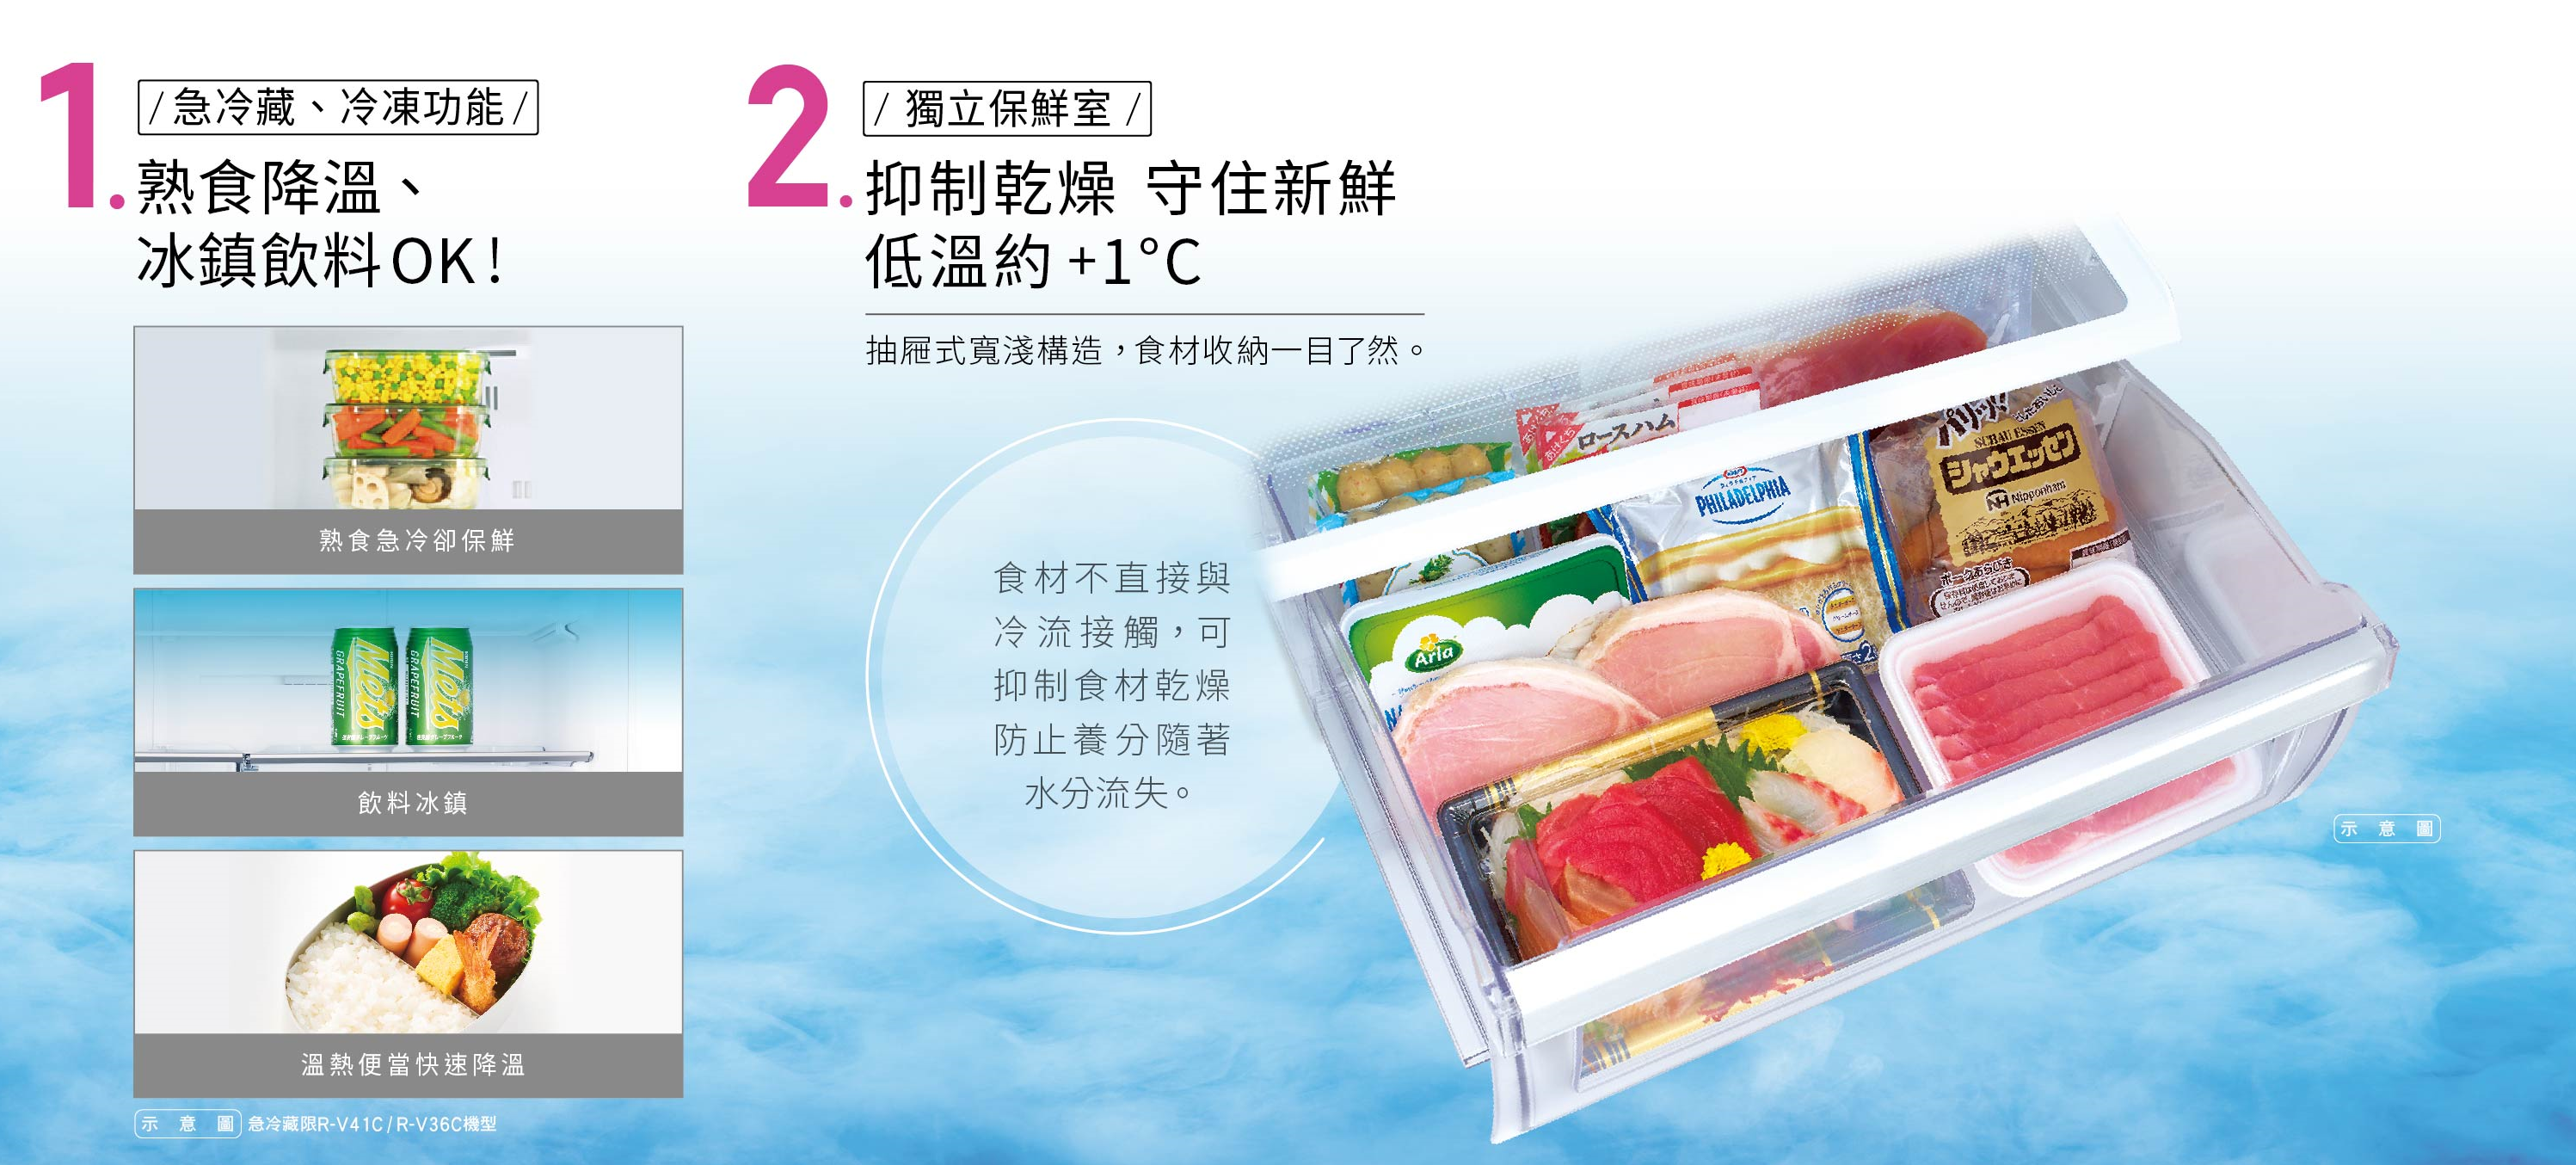 急冷藏、急冷凍、獨立保鮮室(約+1℃)